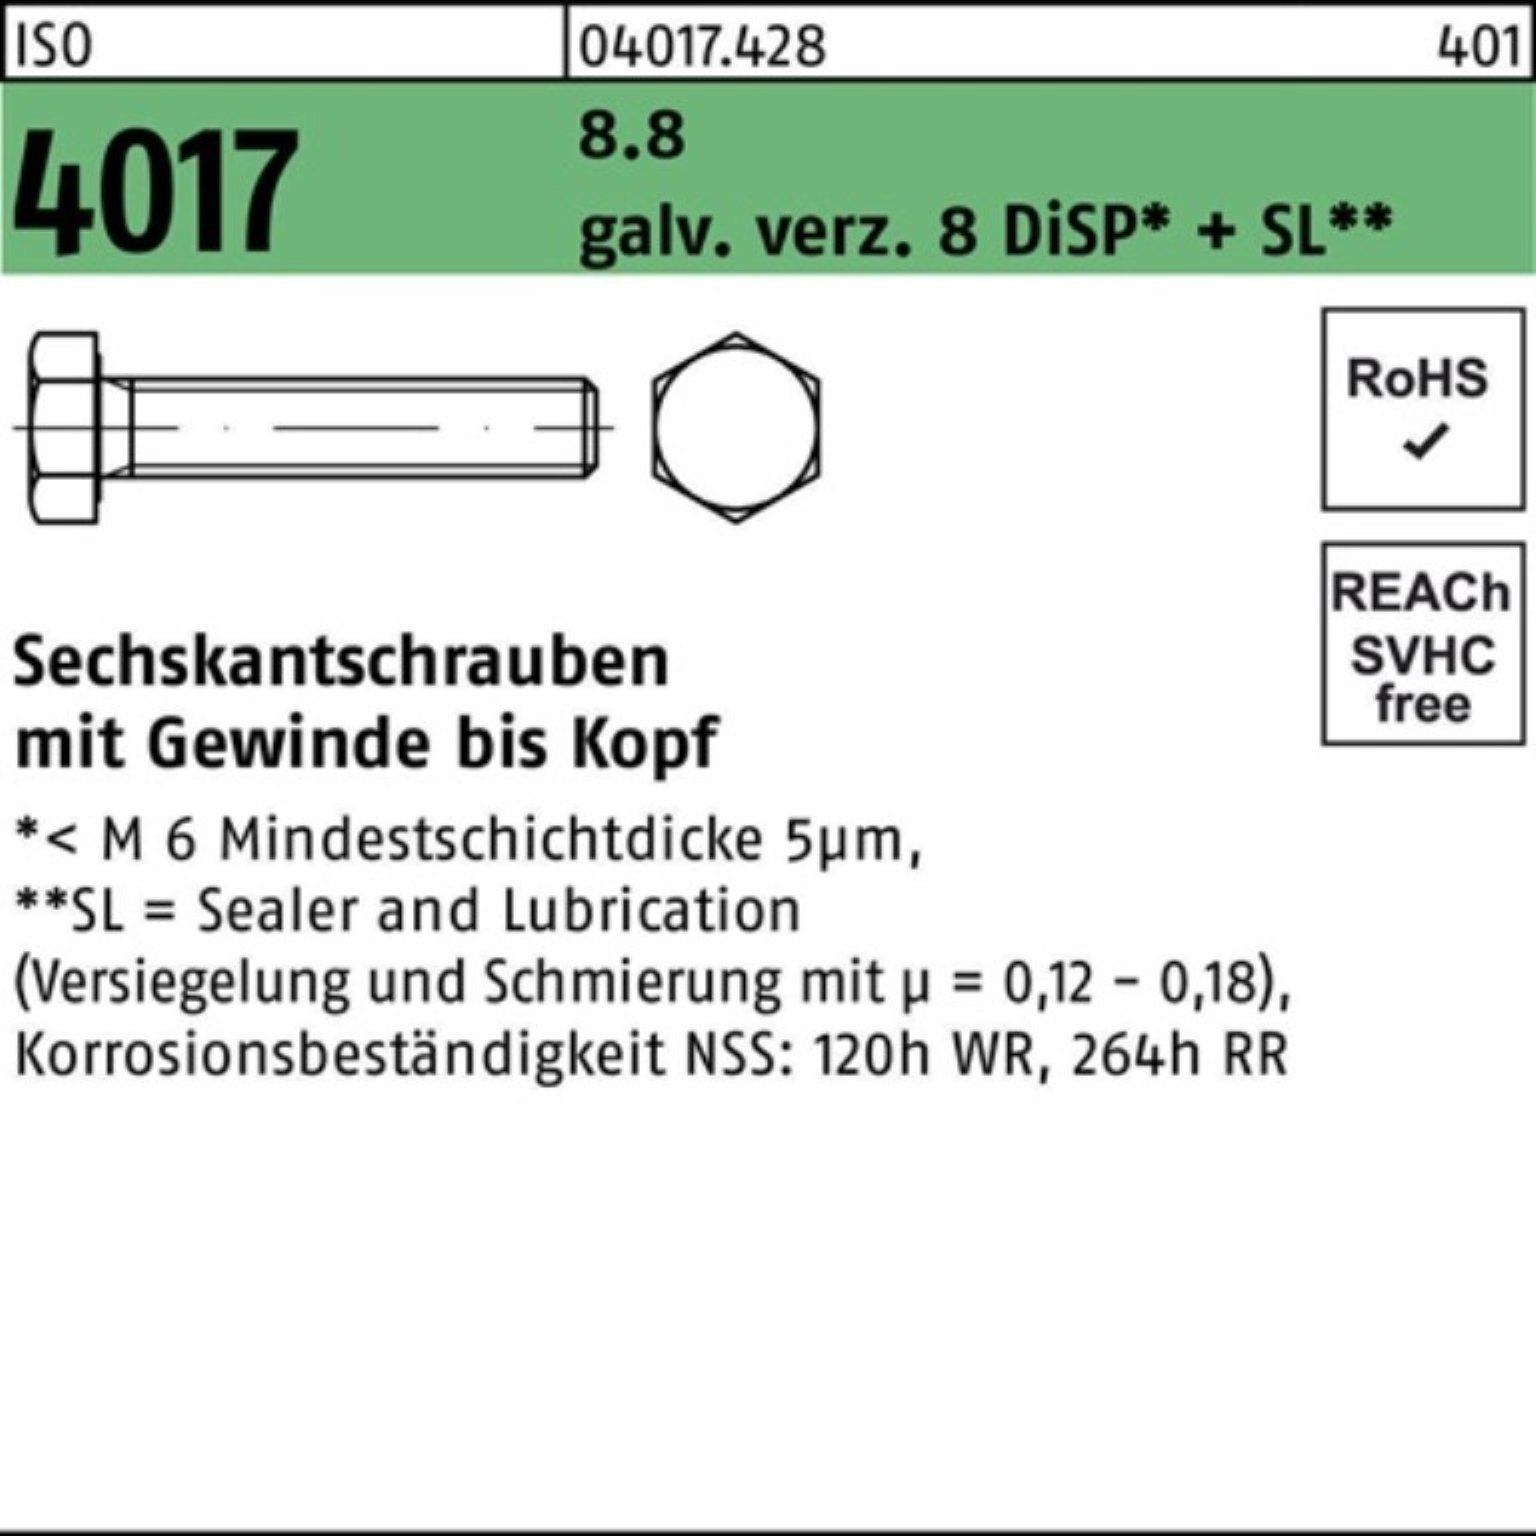 Bufab Sechskantschraube 100er Pack Sechskantschraube ISO 4017 VG M20x 70 8.8 galv.verz. 8 DiSP